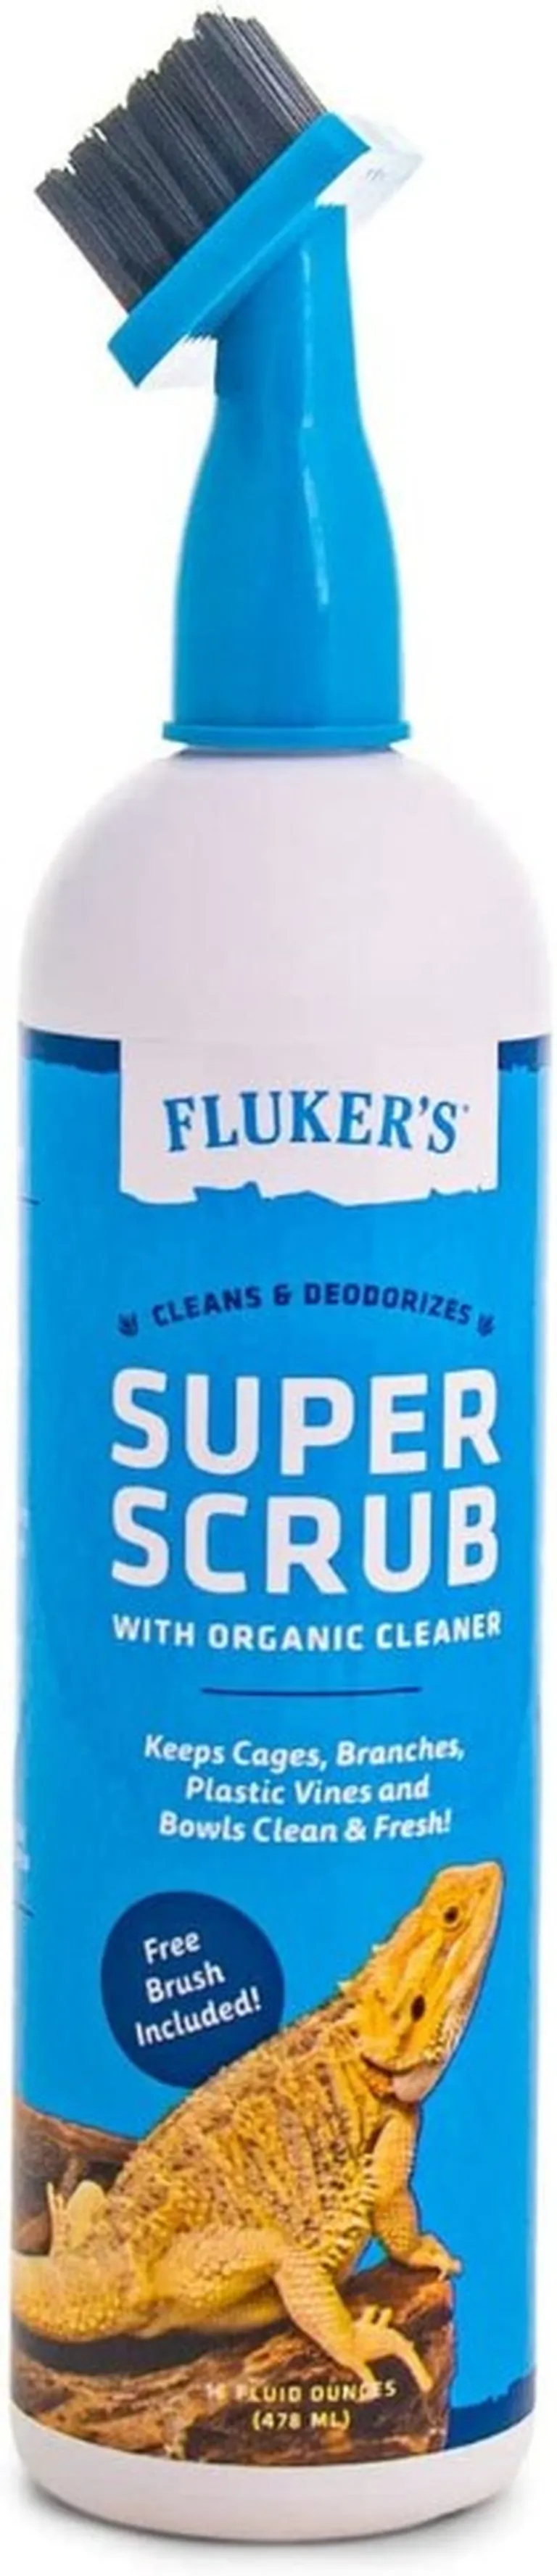 Flukers Super Scrub Brush Cleaner Photo 1